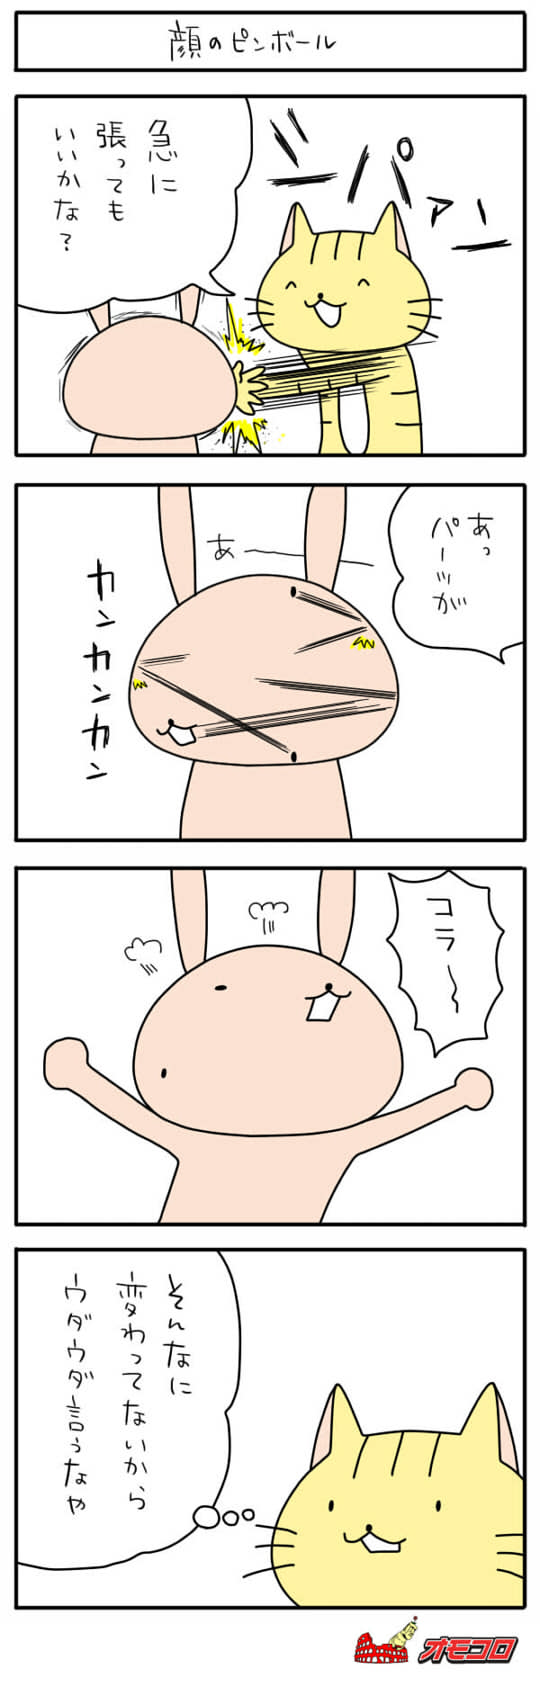 【4コマ漫画】顔のピンボール